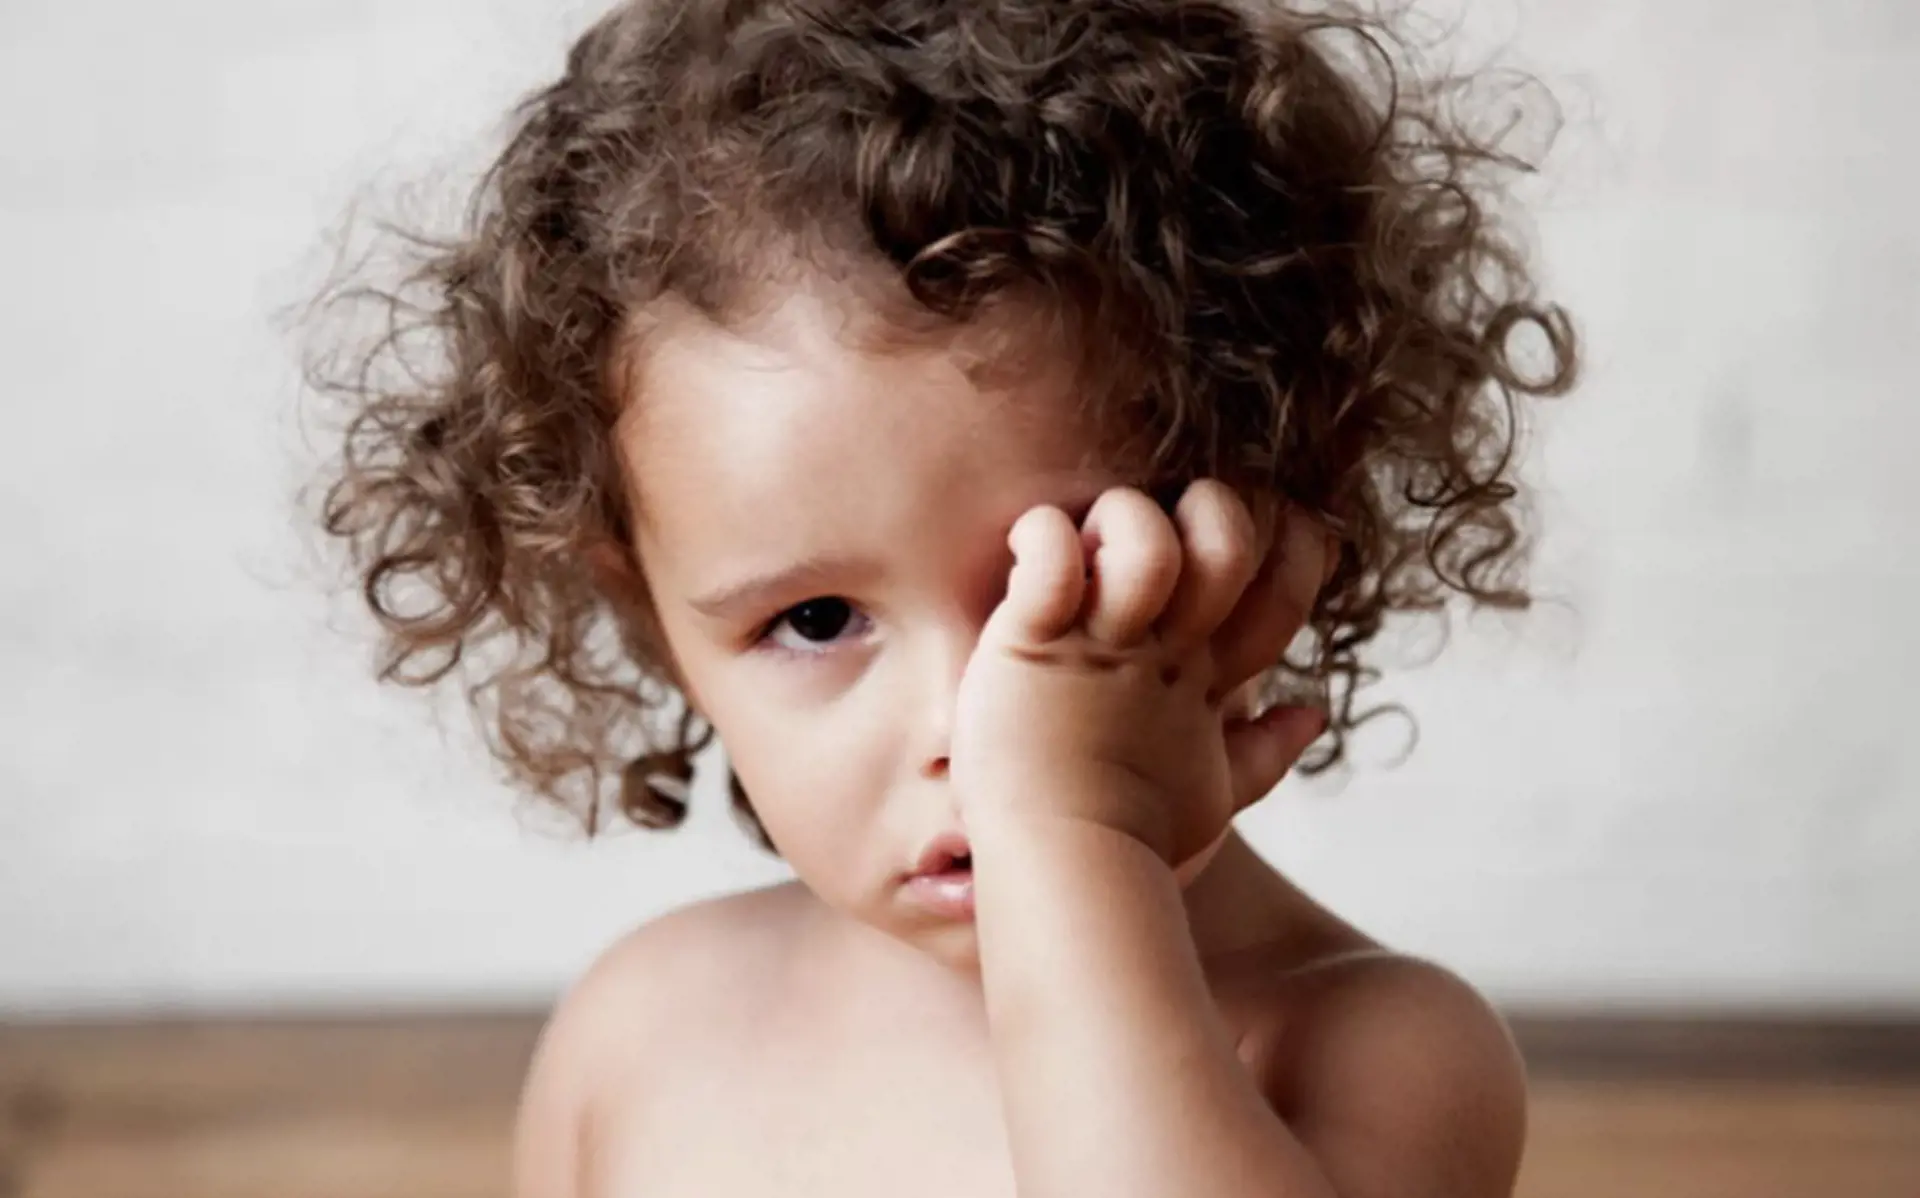 Bebekte Göz Kızarıklığı Neden Olur? Tanı ve Tedavi Yöntemleri Nelerdir?